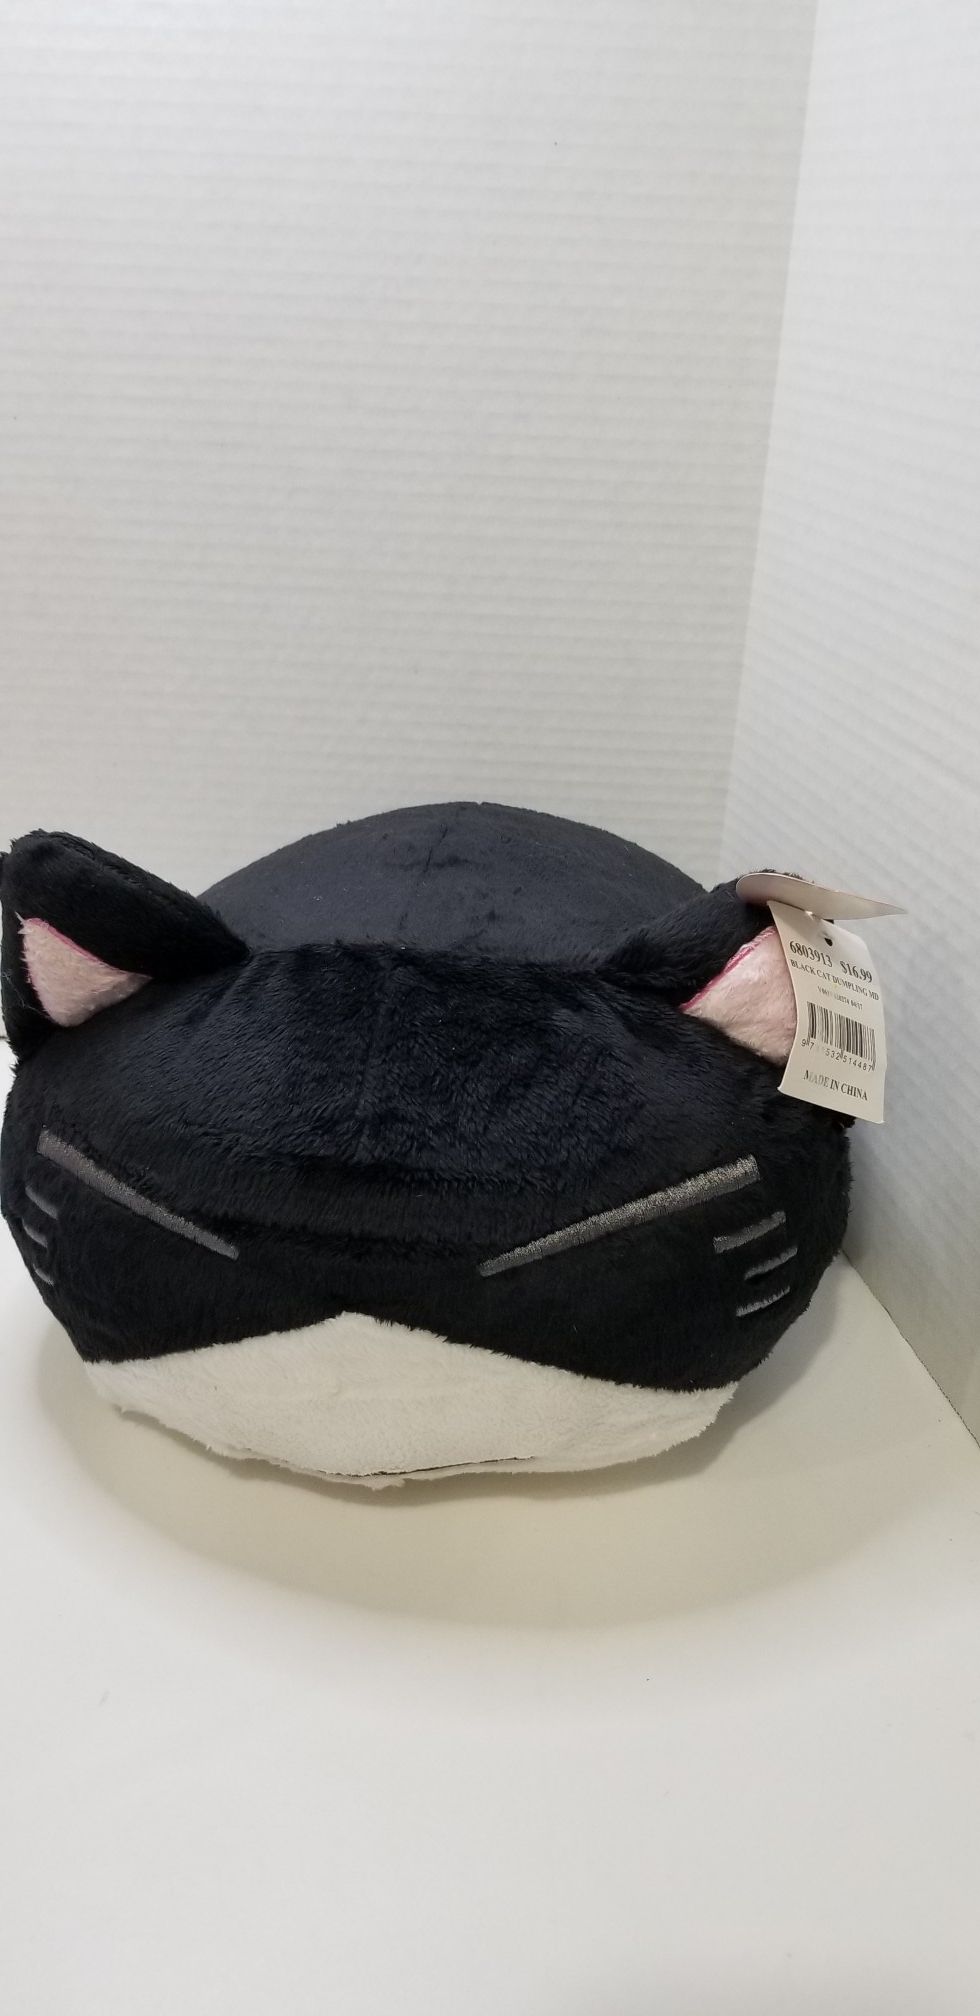 16" black cat dumpling